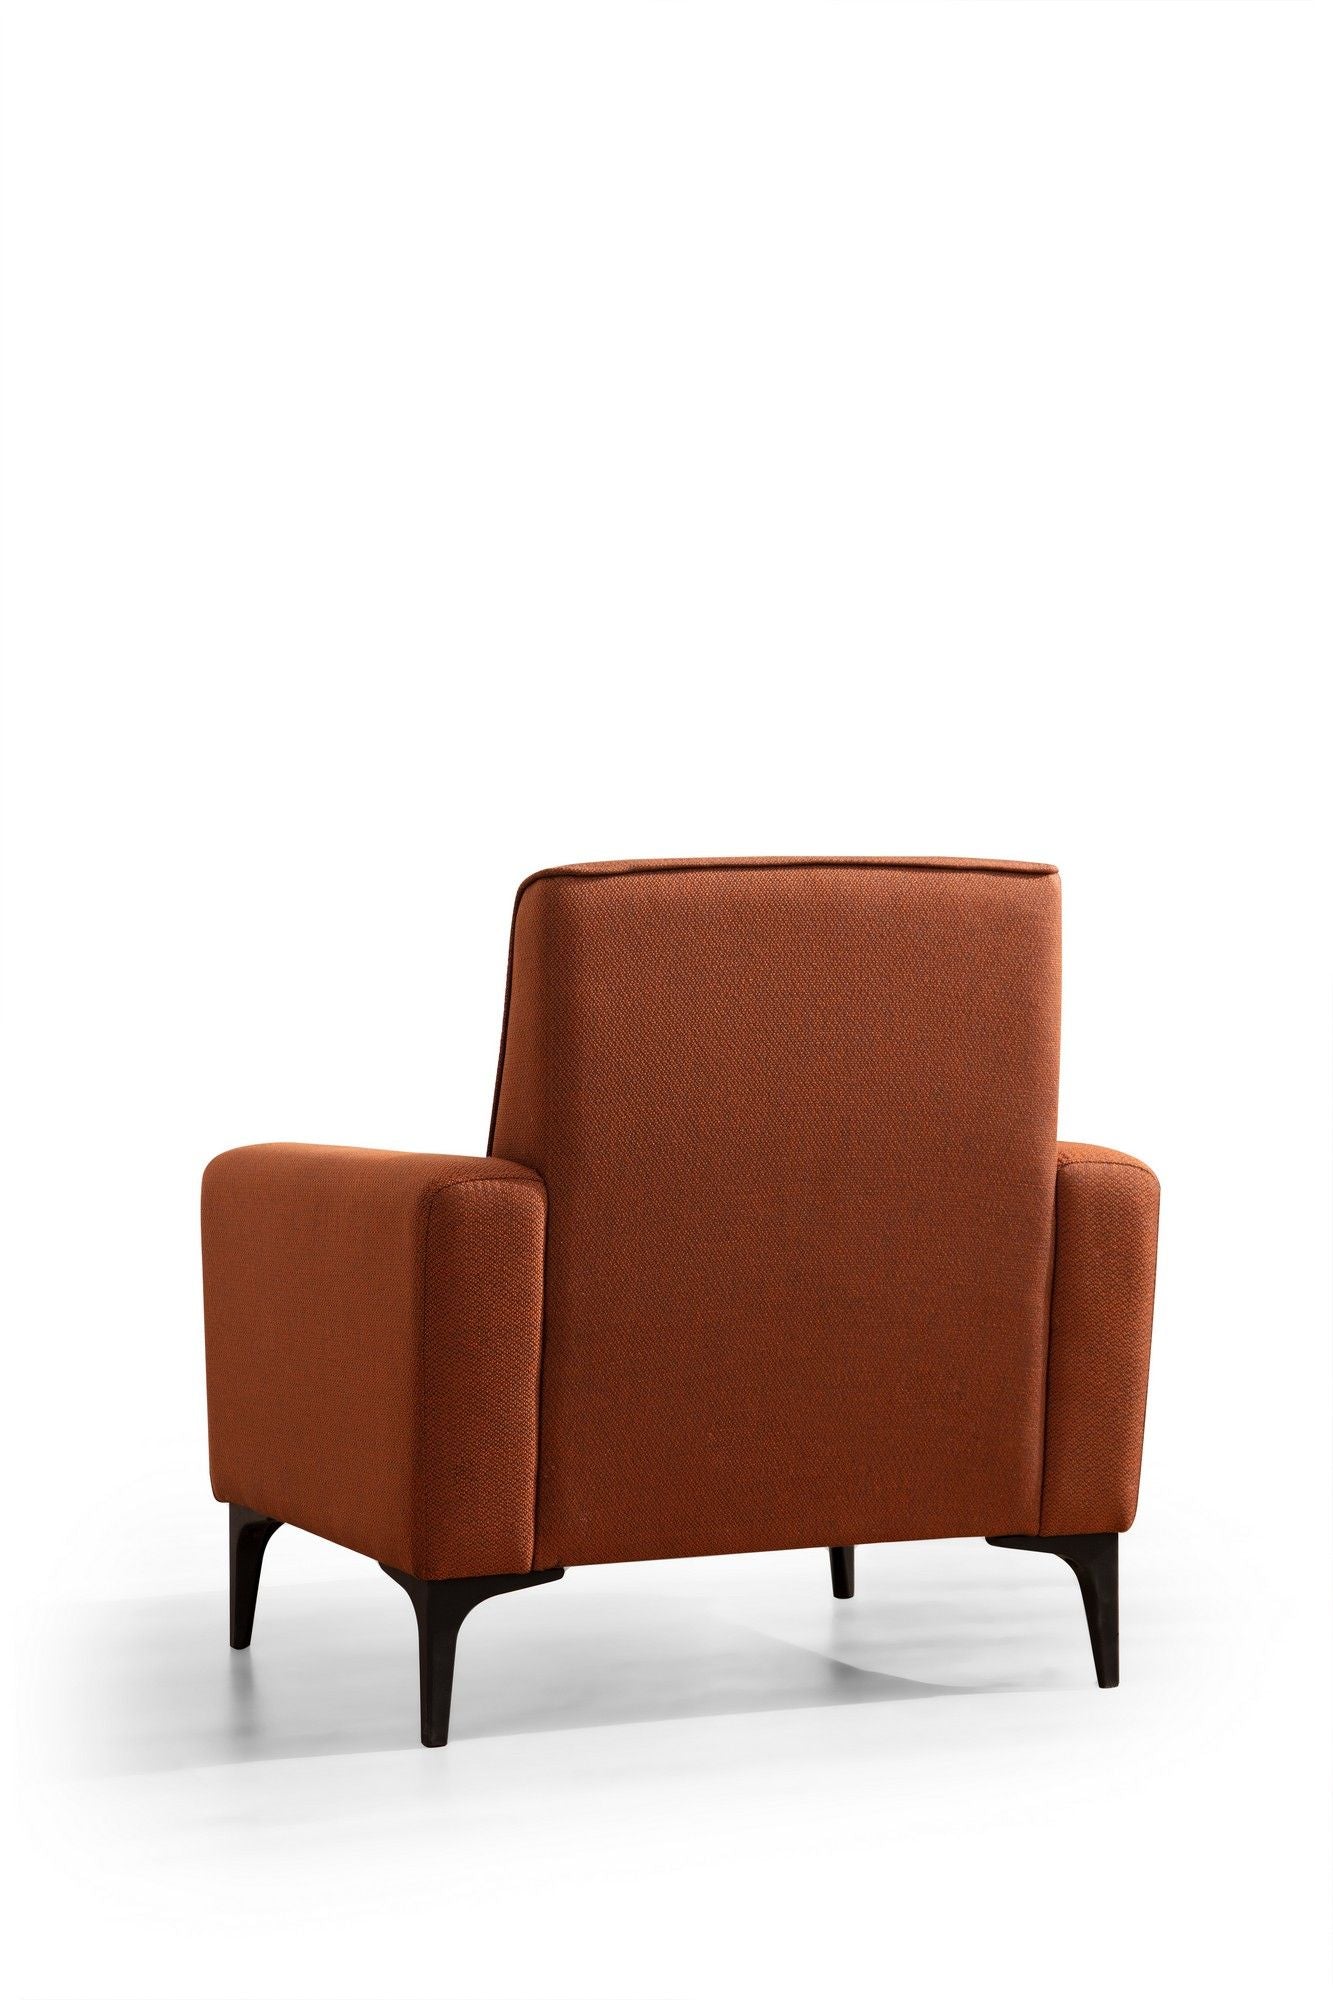 Horizon - Tile Red - 1-Seat Sofa